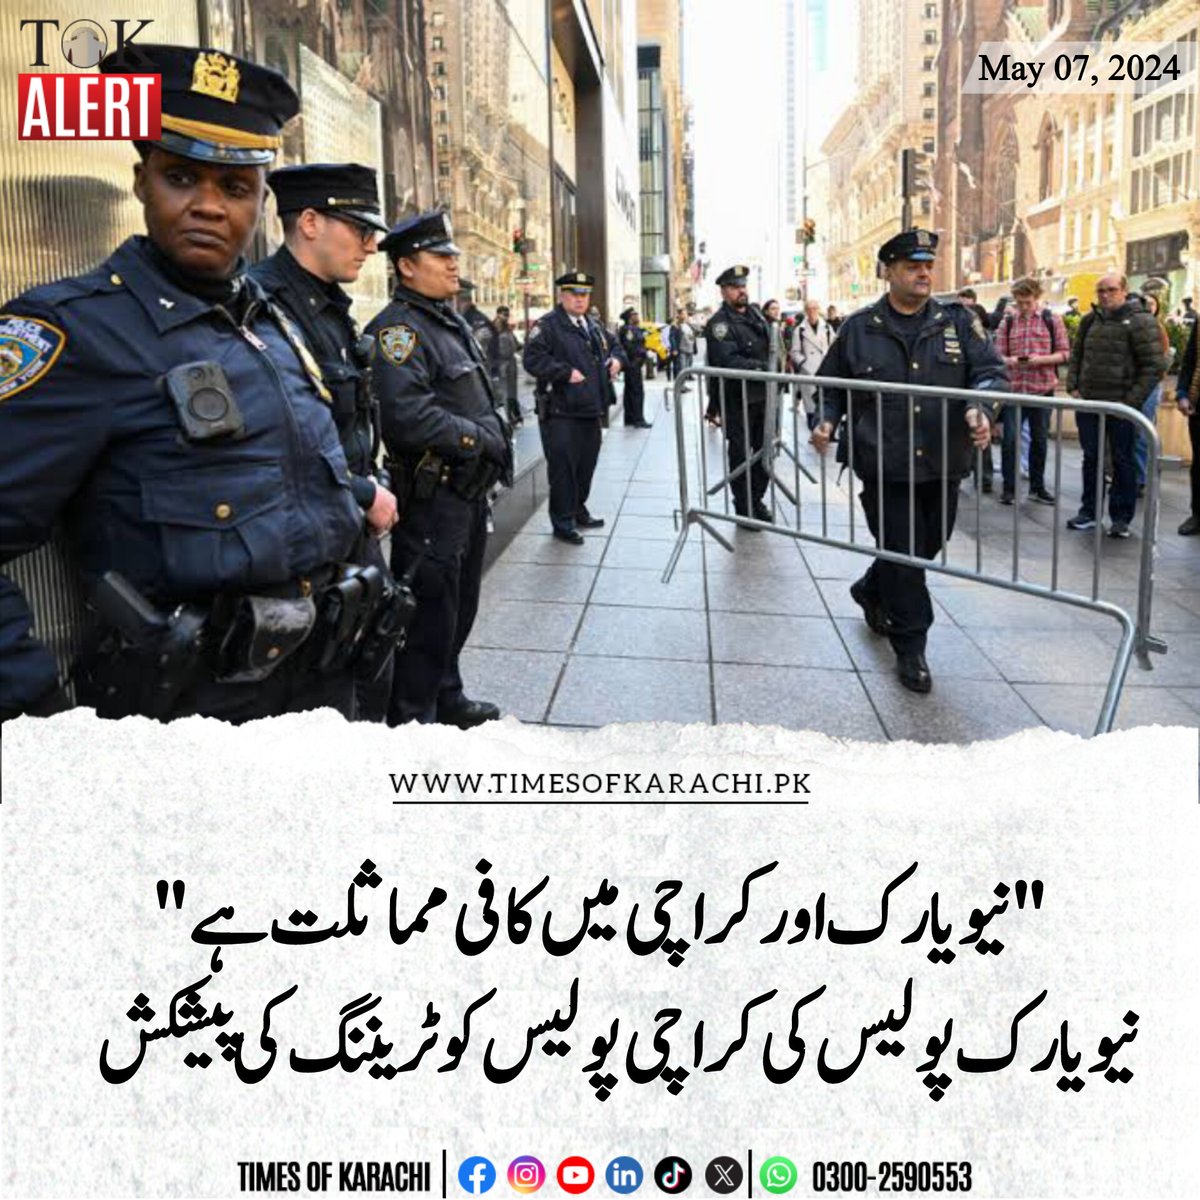 وزیراعلیٰ سندھ سے نیویارک پولیس ڈیپارٹمنٹ کے مختلف کیڈرز کے افسران کی ملاقات ہوئی۔ نیویارک پولیس ڈیپارٹمنٹ کا کہنا تھا کہ نیویارک اور کراچی میں کافی مماثلت ہے، 10 فیصد جرائم پیشہ افراد 90 فیصد افراد کو متاثر کرتے ہیں، اس رویے کو تبدیل کرنے کےلیے ضروری ہے کہ جرم کرنے والے کو معلوم…